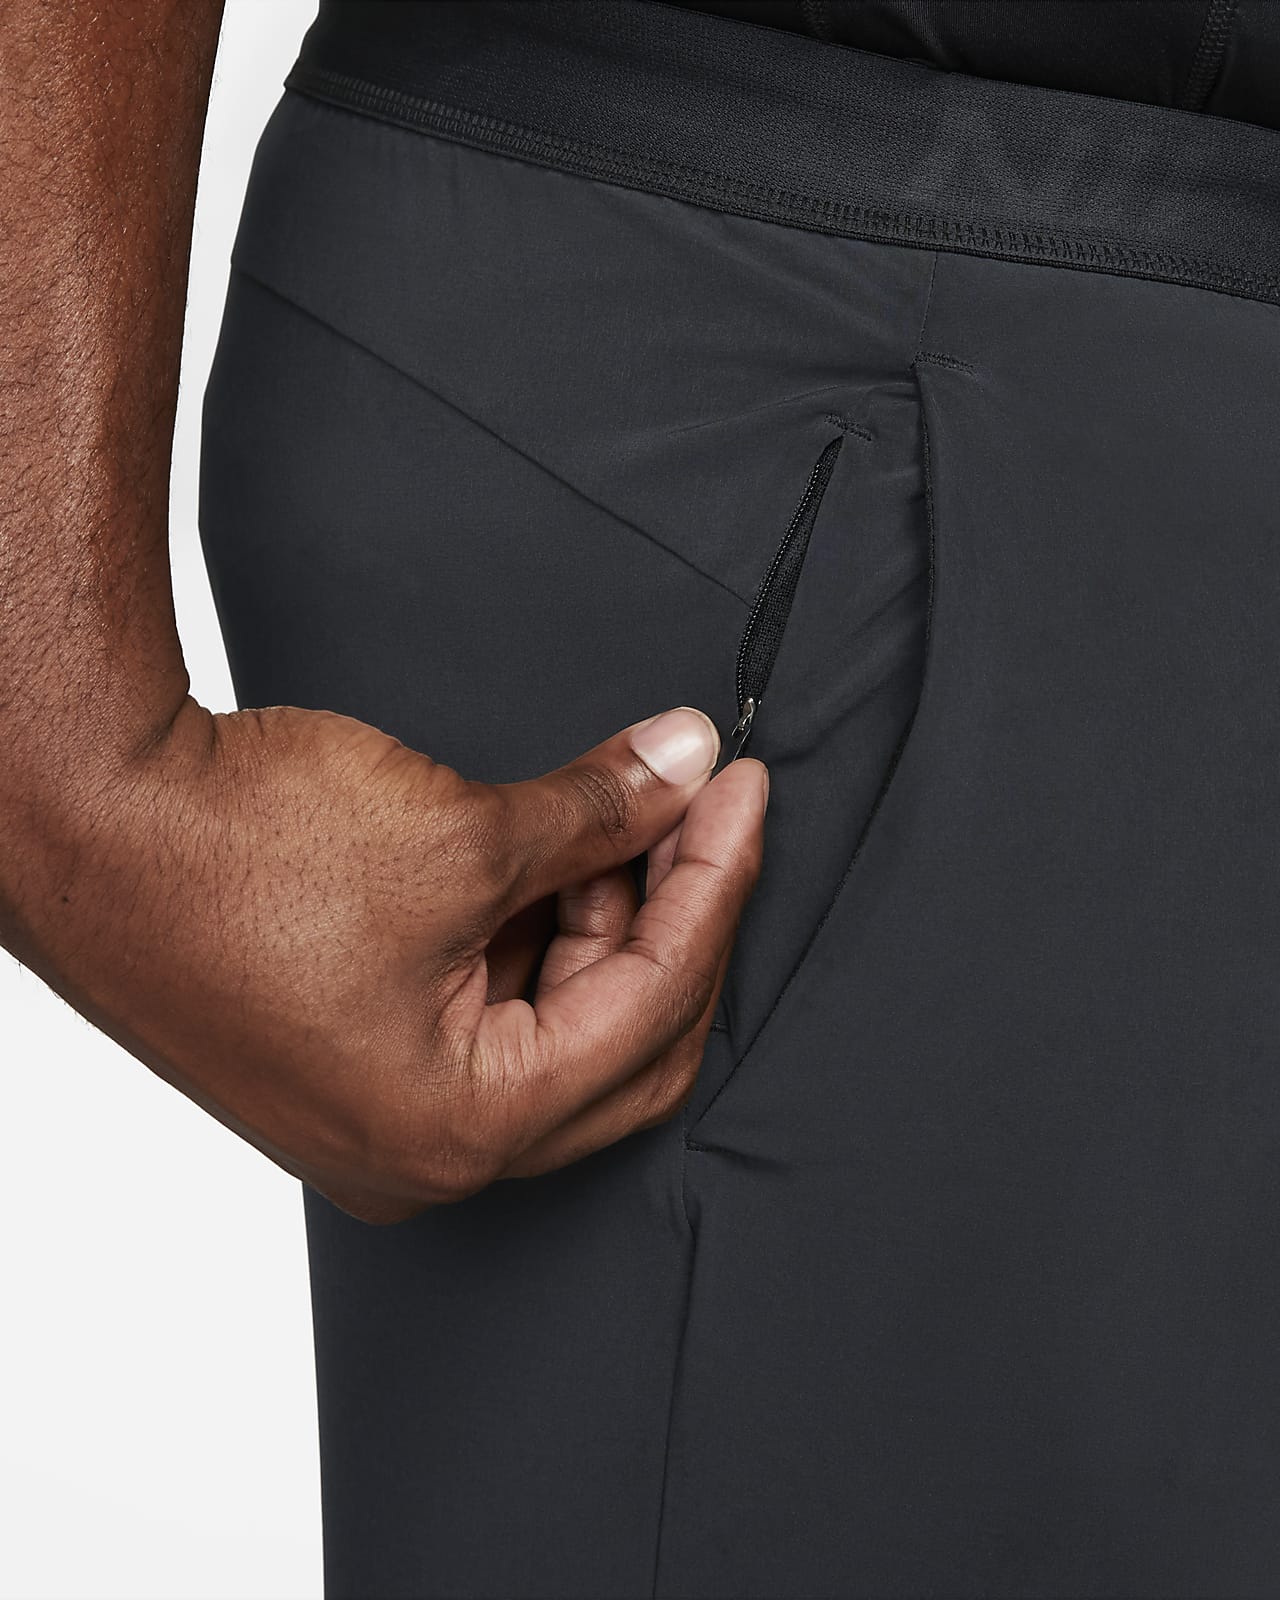 Nike Pro Dri-FIT Vent Max Men's Training Trousers. Nike LU